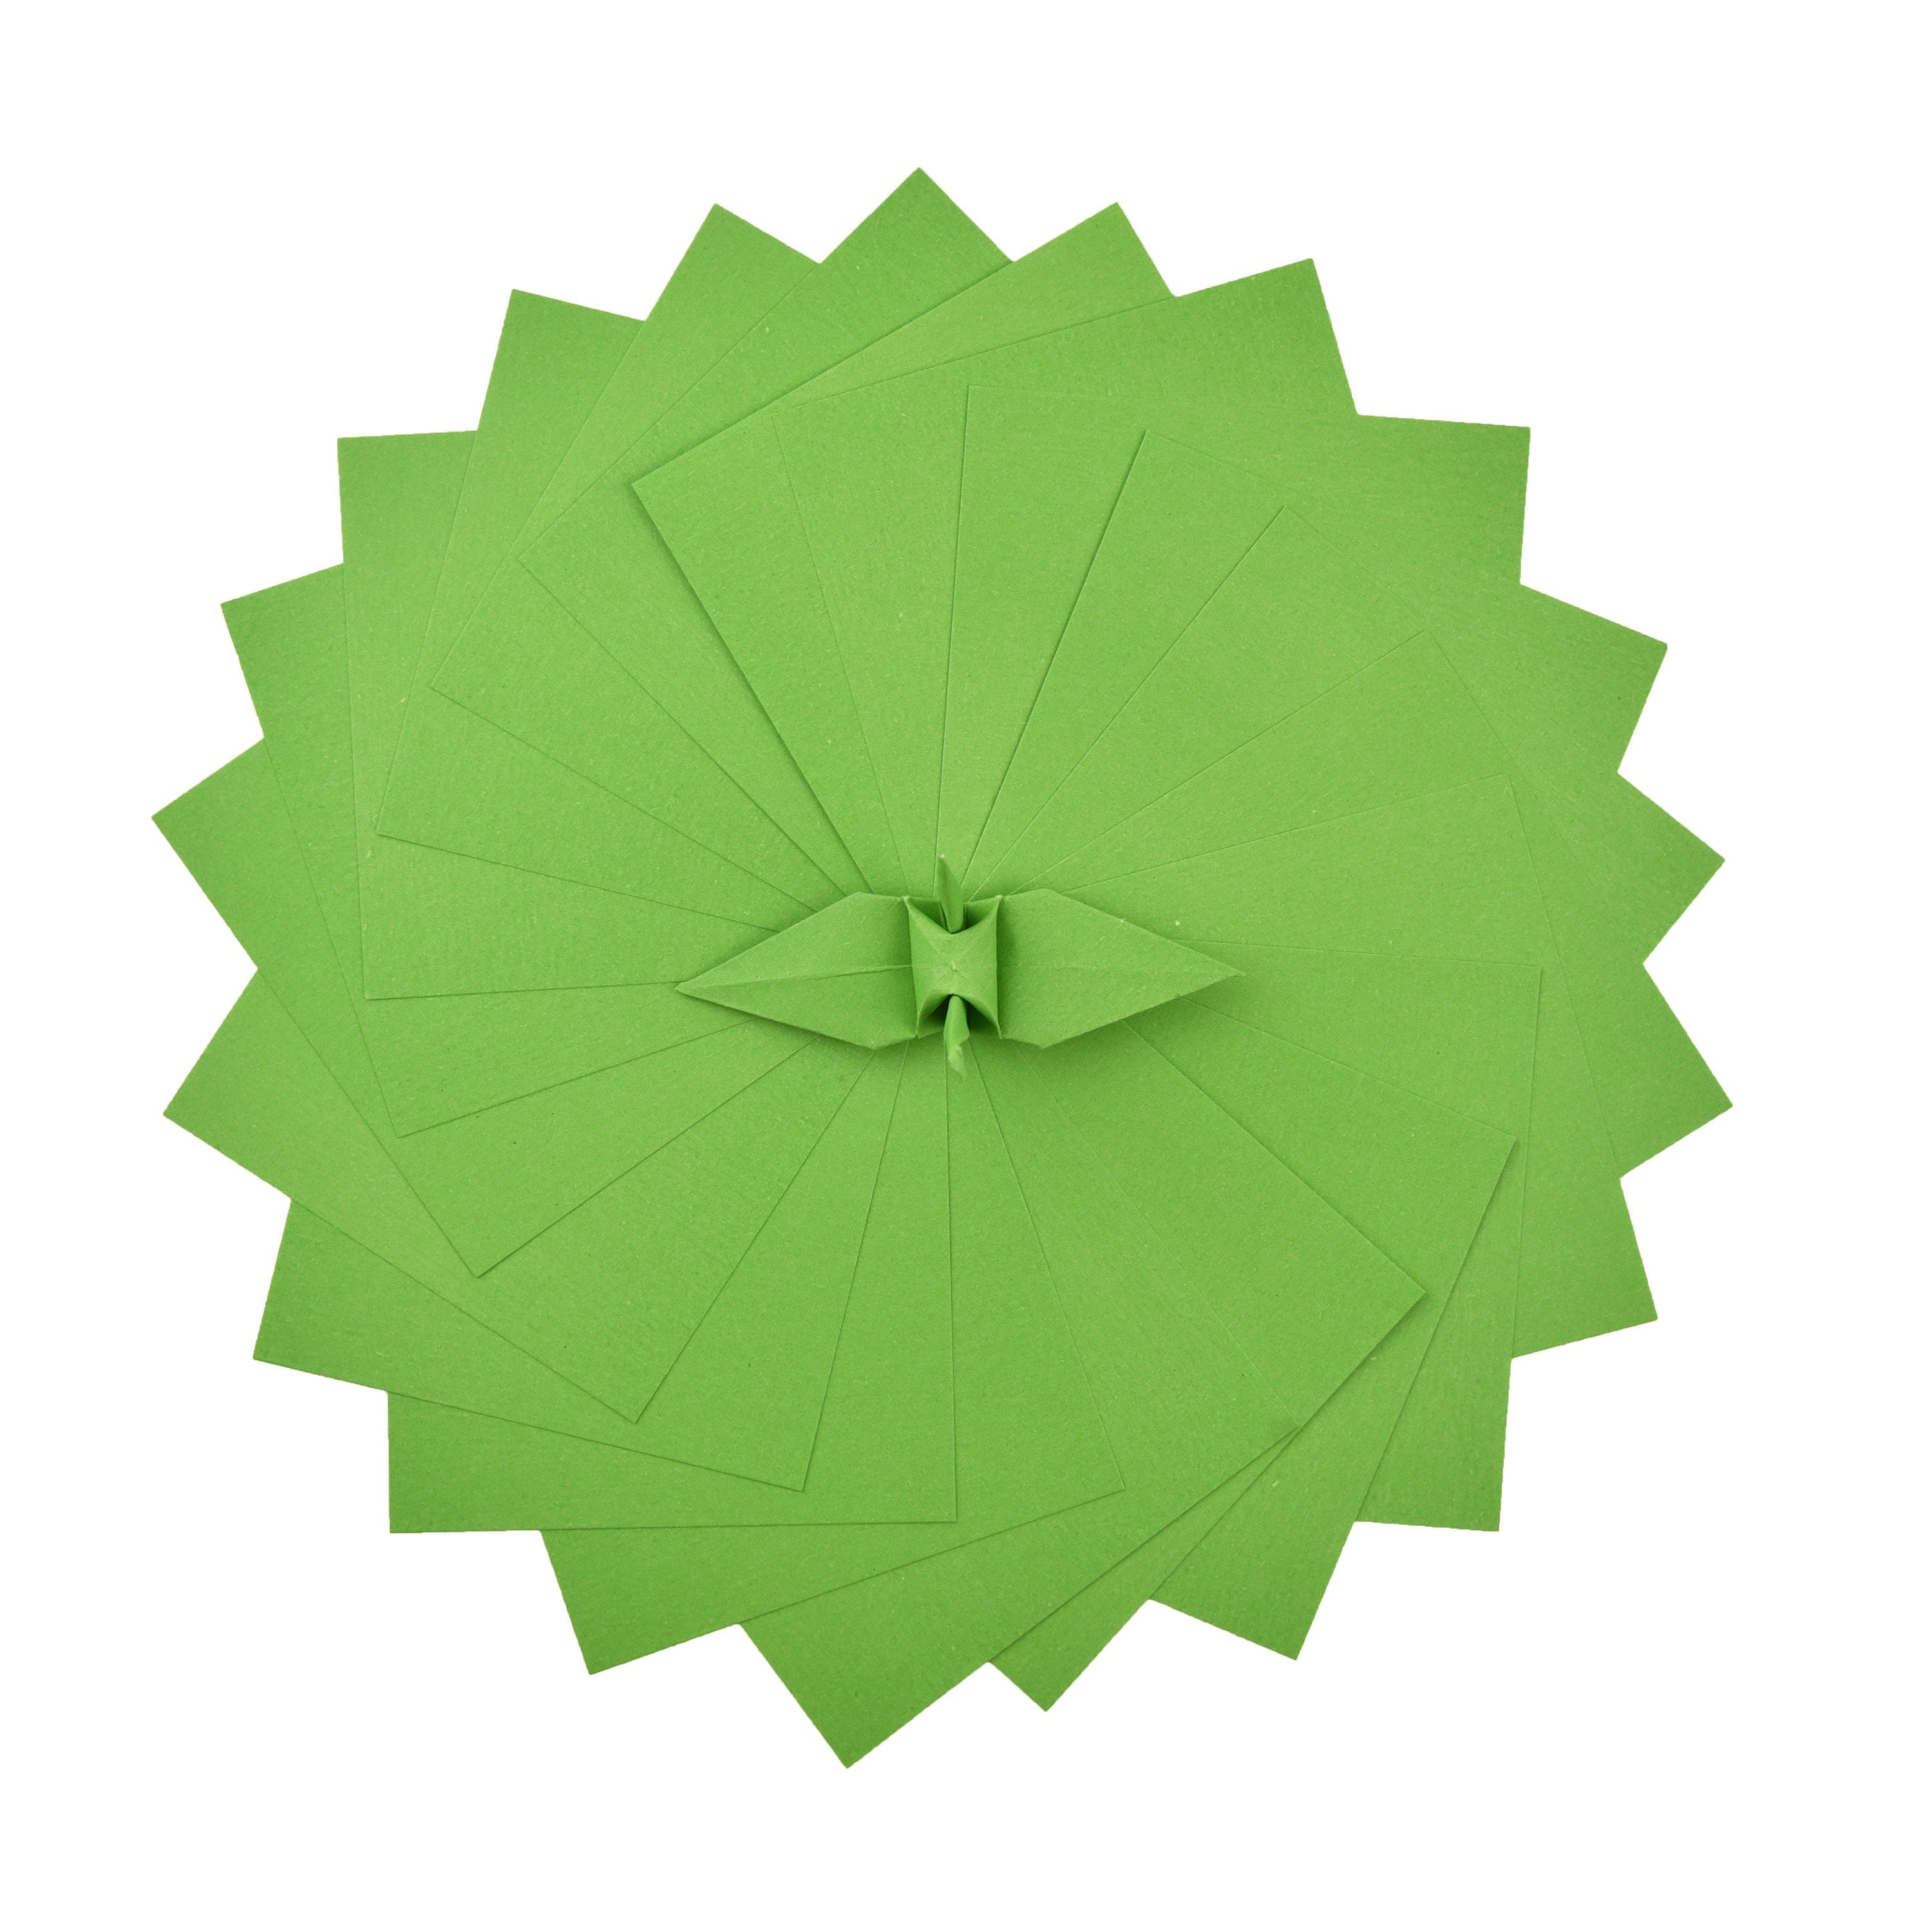 100 Hojas de Papel Origami - 6x6 pulgadas - Paquete de Papel Cuadrado para Plegar, Grullas de Origami y Decoración - S25